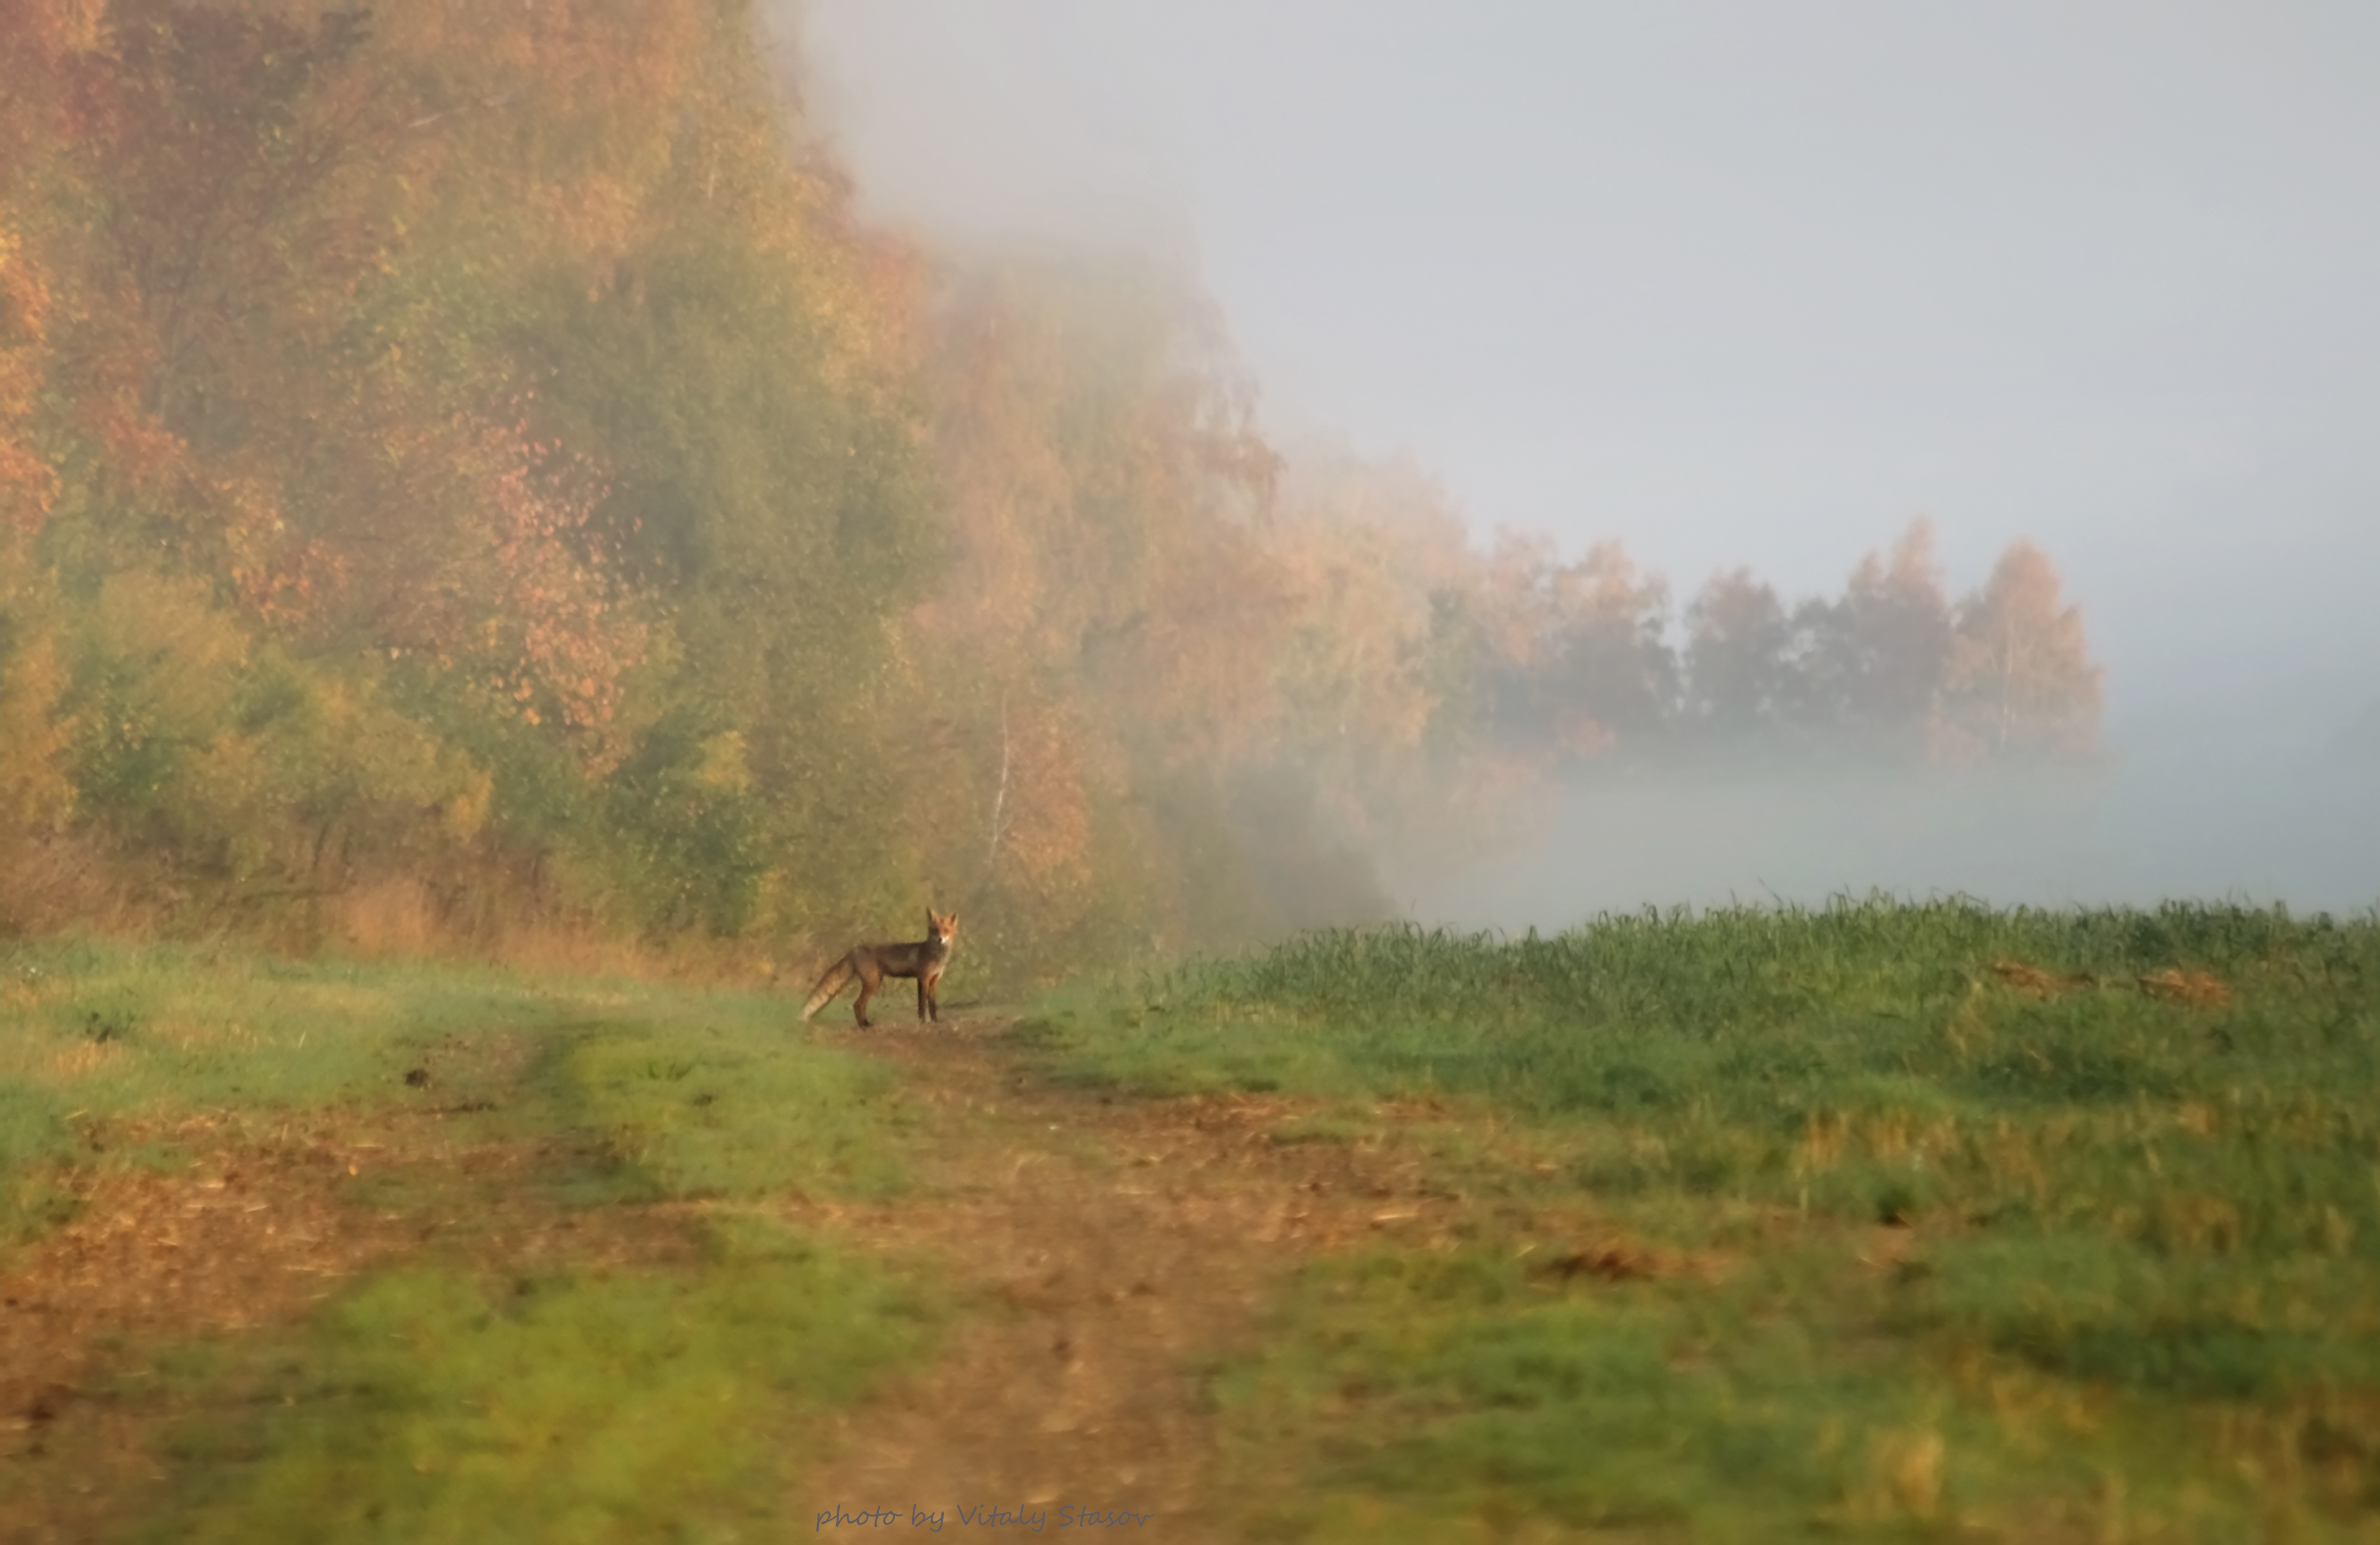 осень, туман, животные, лис, лиса, лисёнок, утро, поле, лес, Стасов Виталий